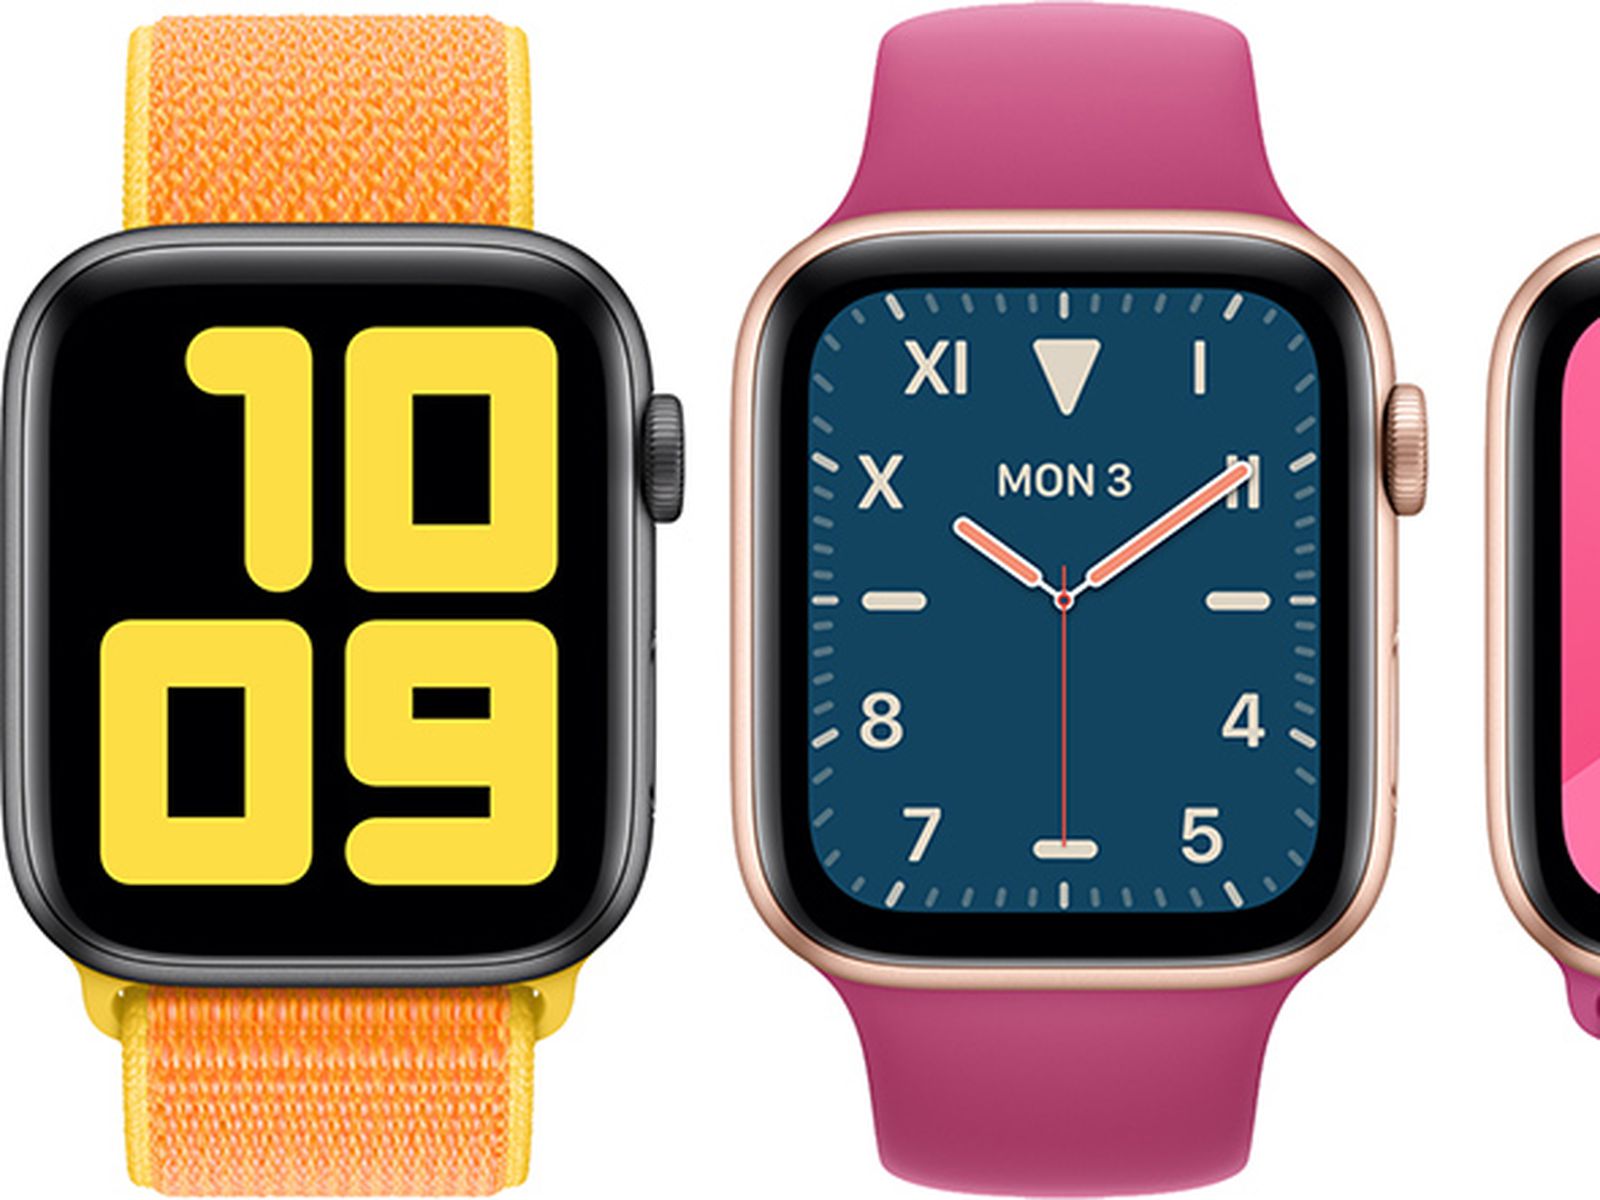 Apple Watch: Tay đeo Apple Watch là chứng minh cho sự đẳng cấp và thời thượng của bạn. Hãy ngắm nhìn những mẫu đồng hồ thông minh cao cấp của Apple, từ đơn giản tới phức tạp, đều đẹp hút hồn.